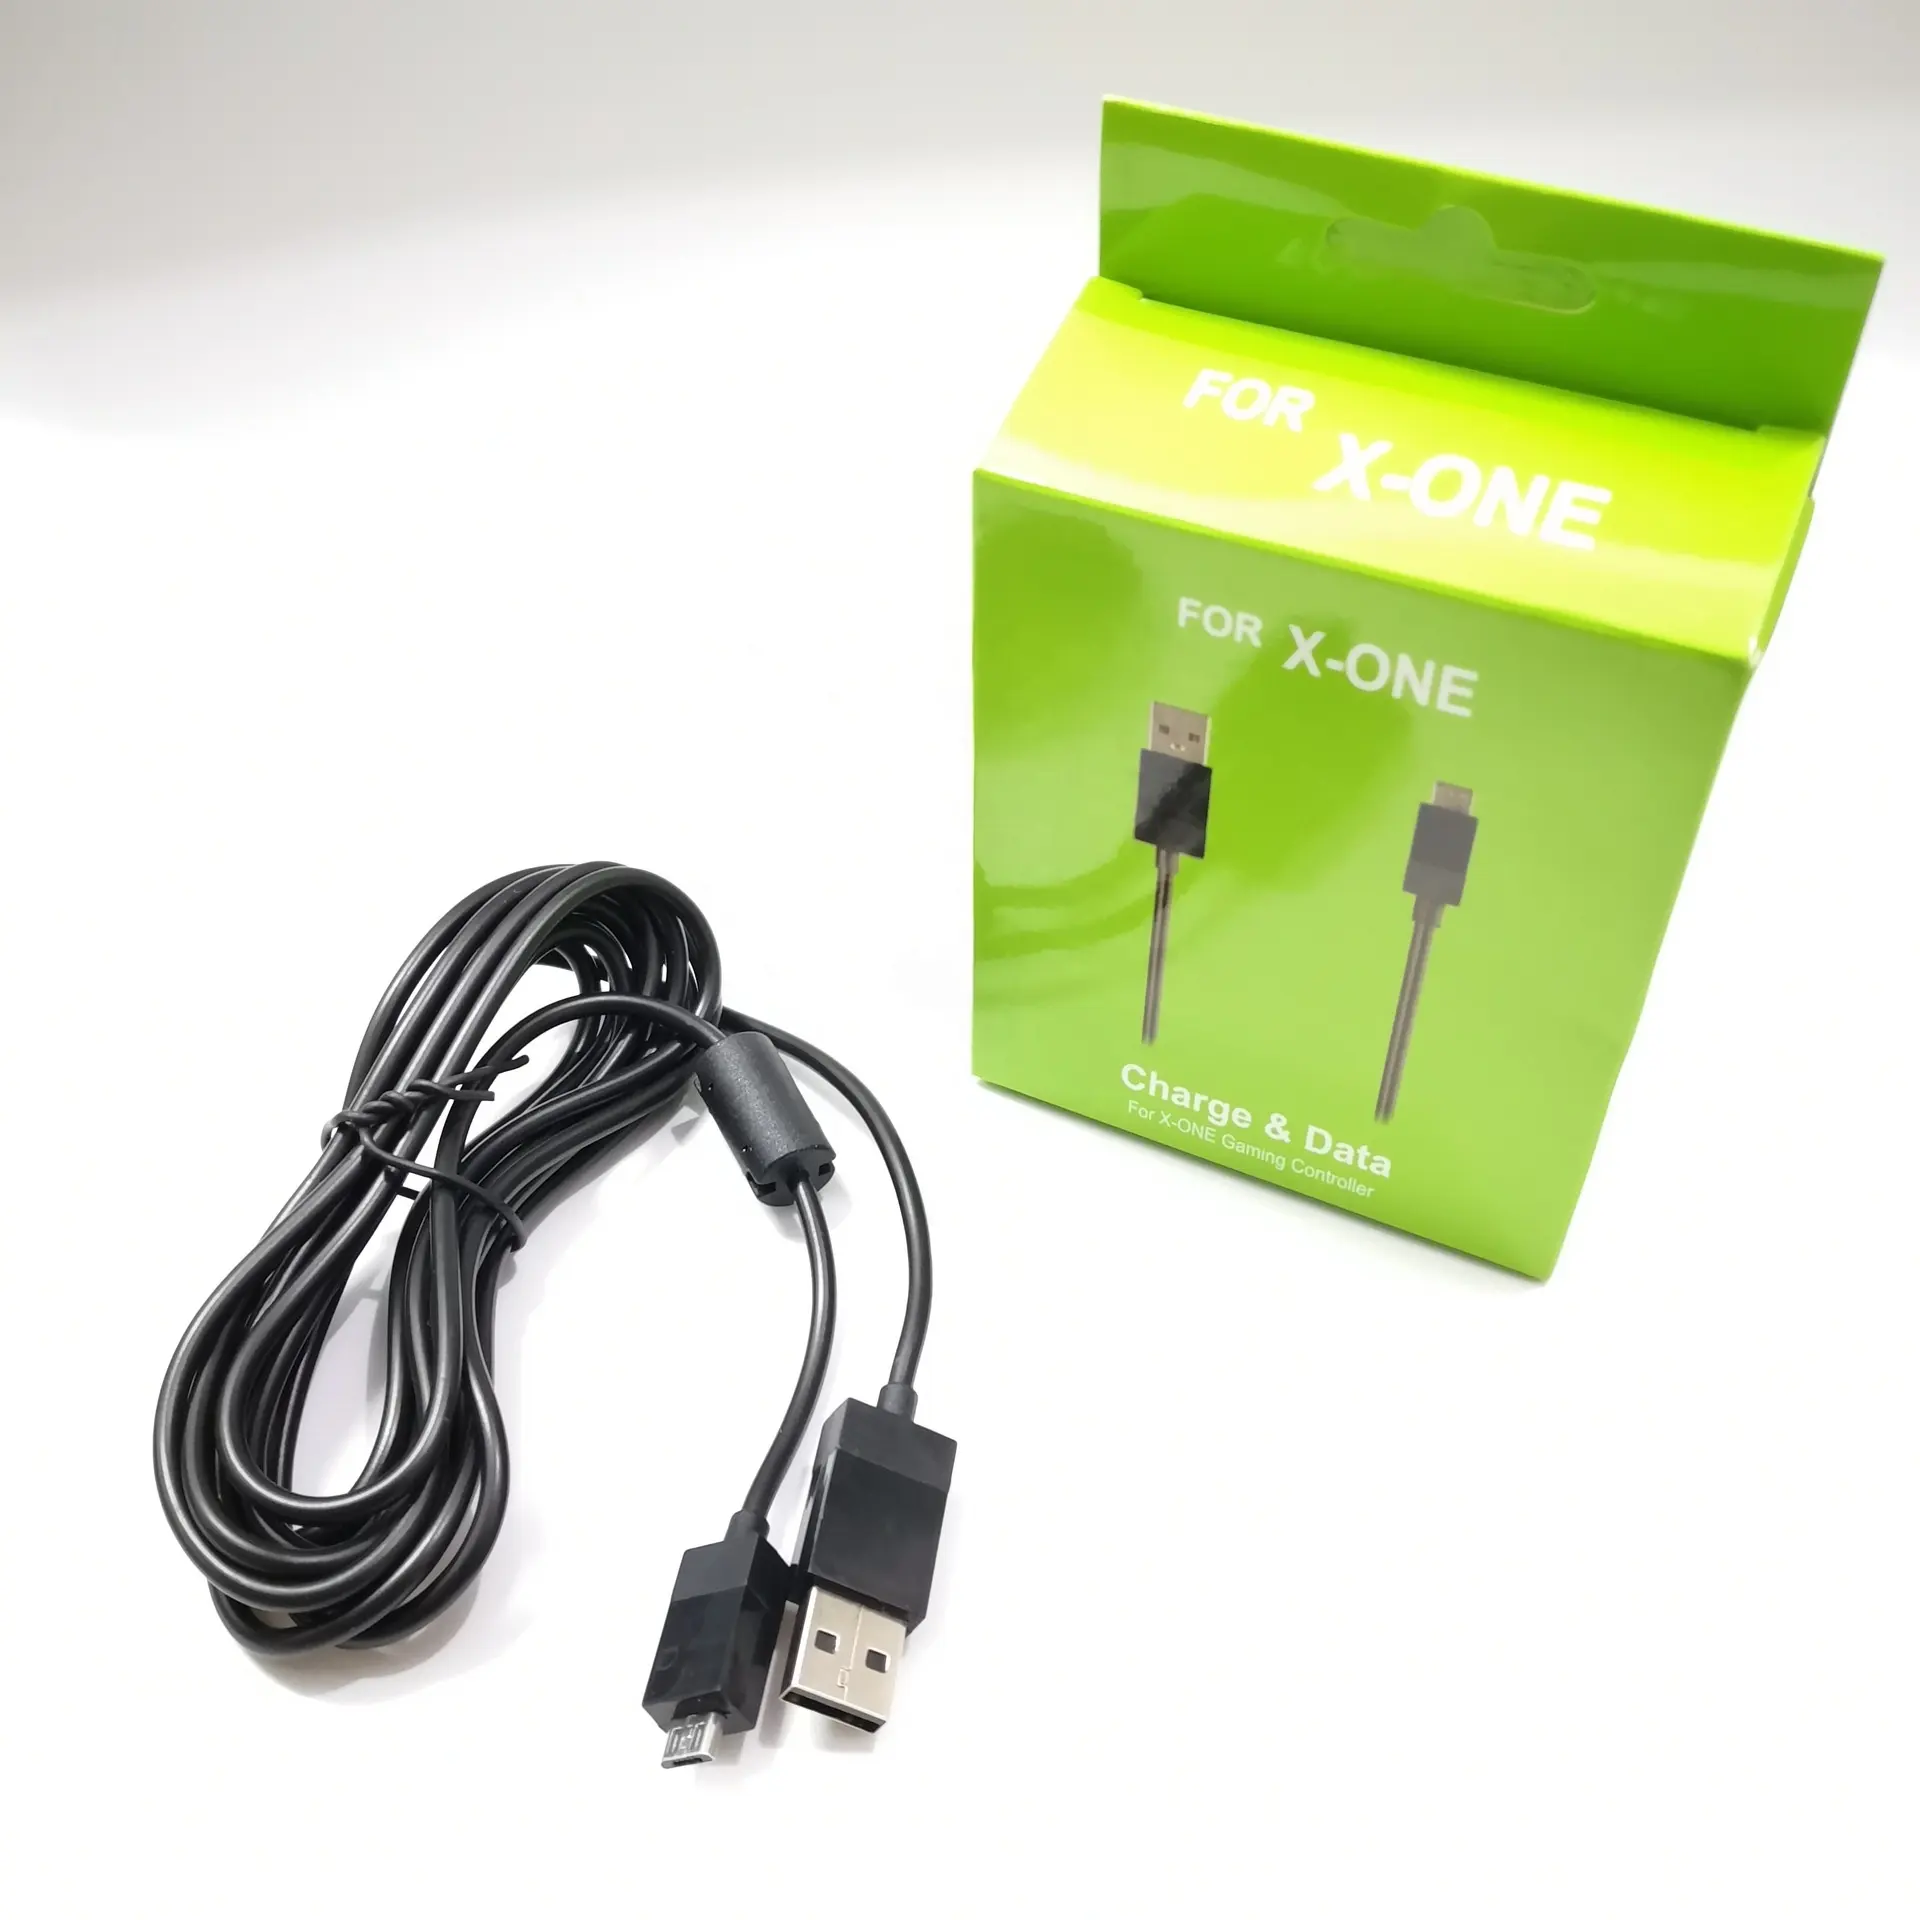 Cable de carga microusb de 2,75 m, Cable de carga de Play para Sony Playstation PS4, Microsoft Xbox One, controladores inalámbricos